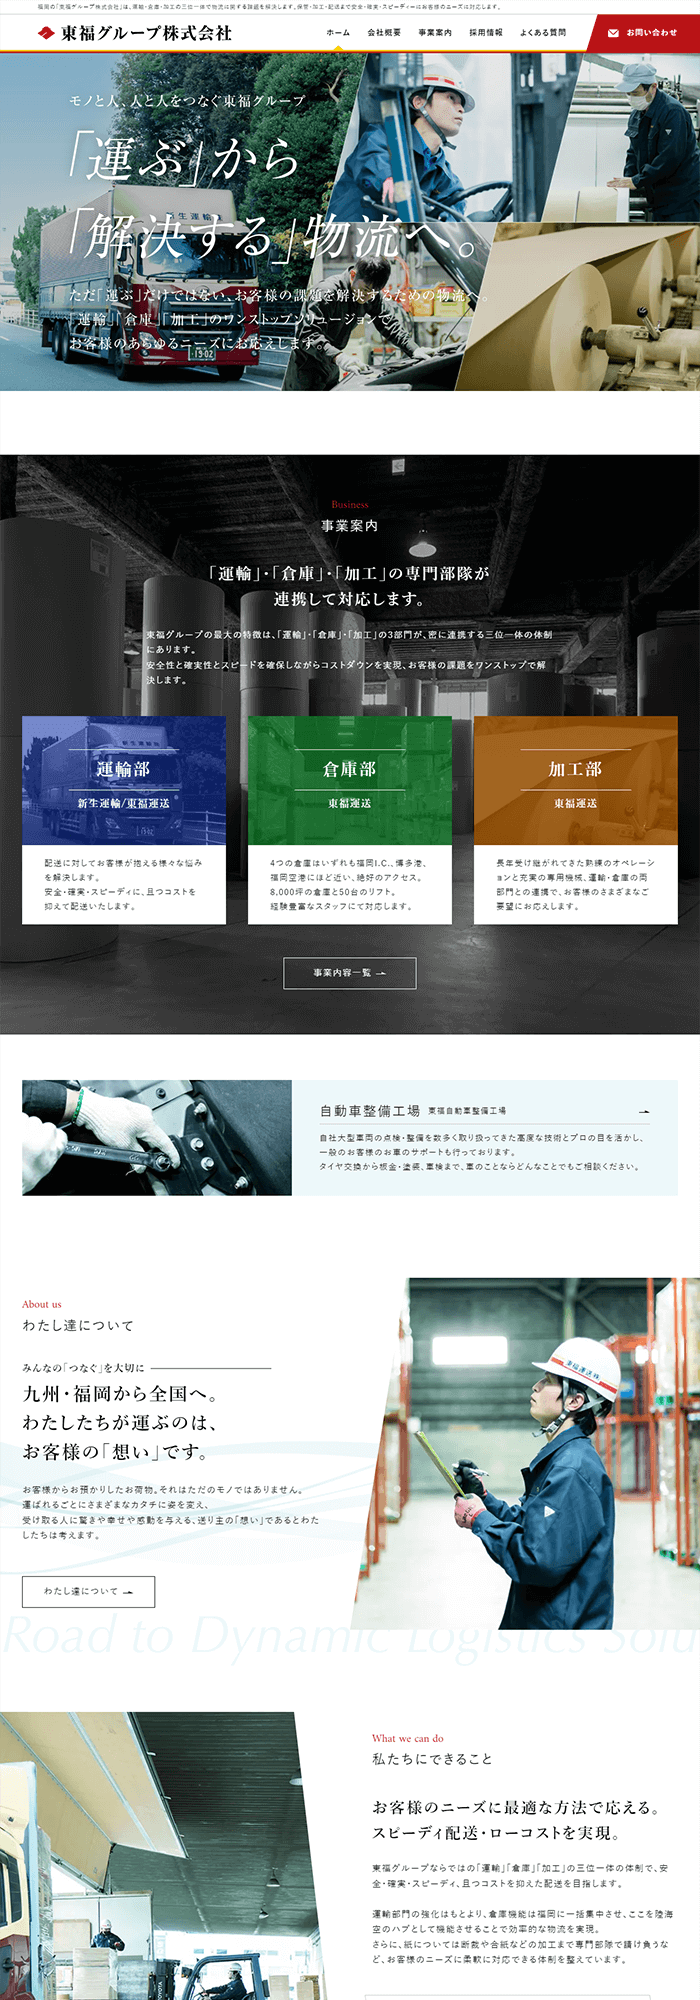 東福グループ株式会社様 のホームページ実績 デスクトップイメージ